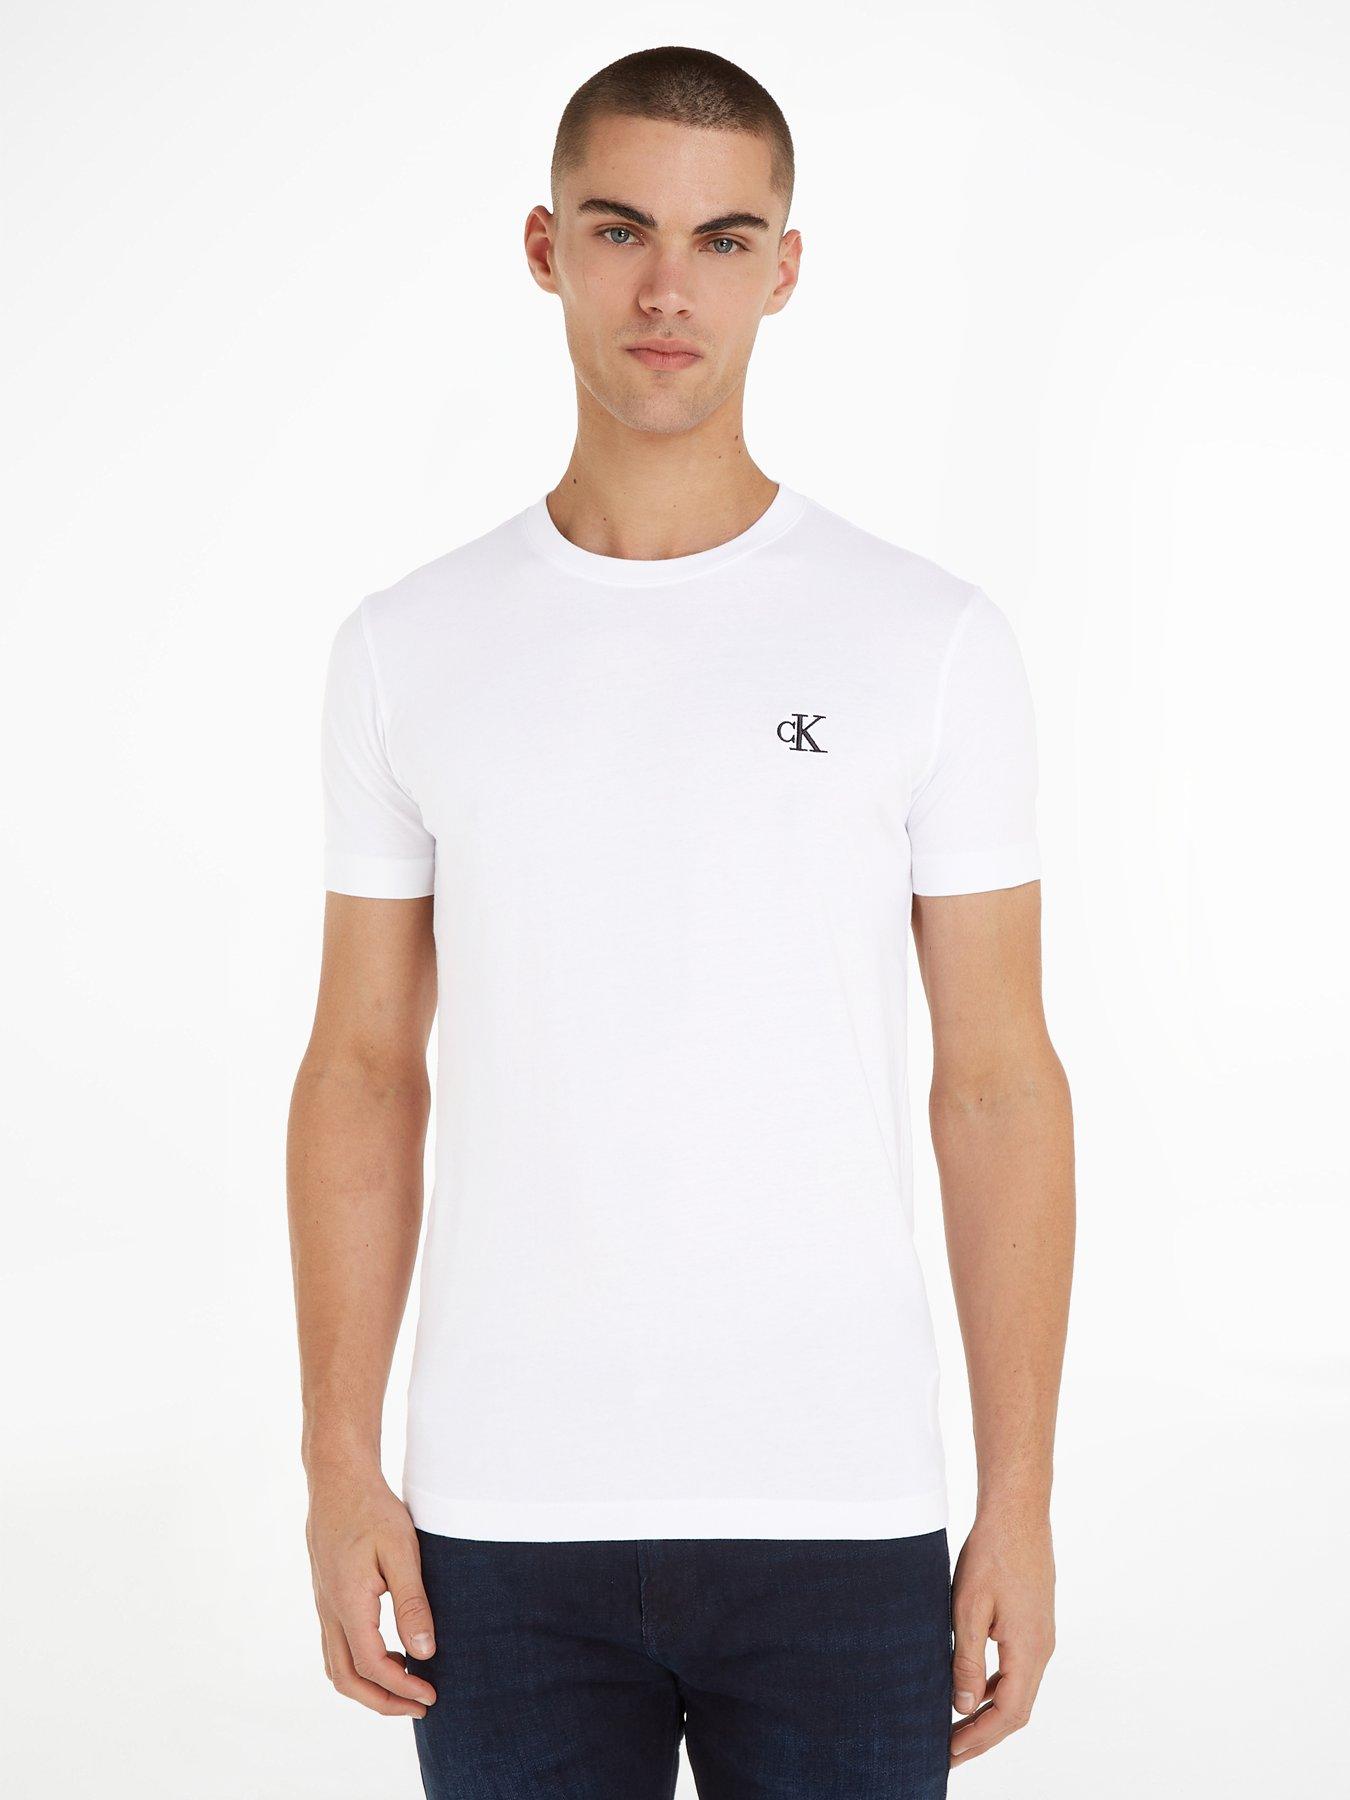 Calvin Klein Jeans, Essential T Shirt